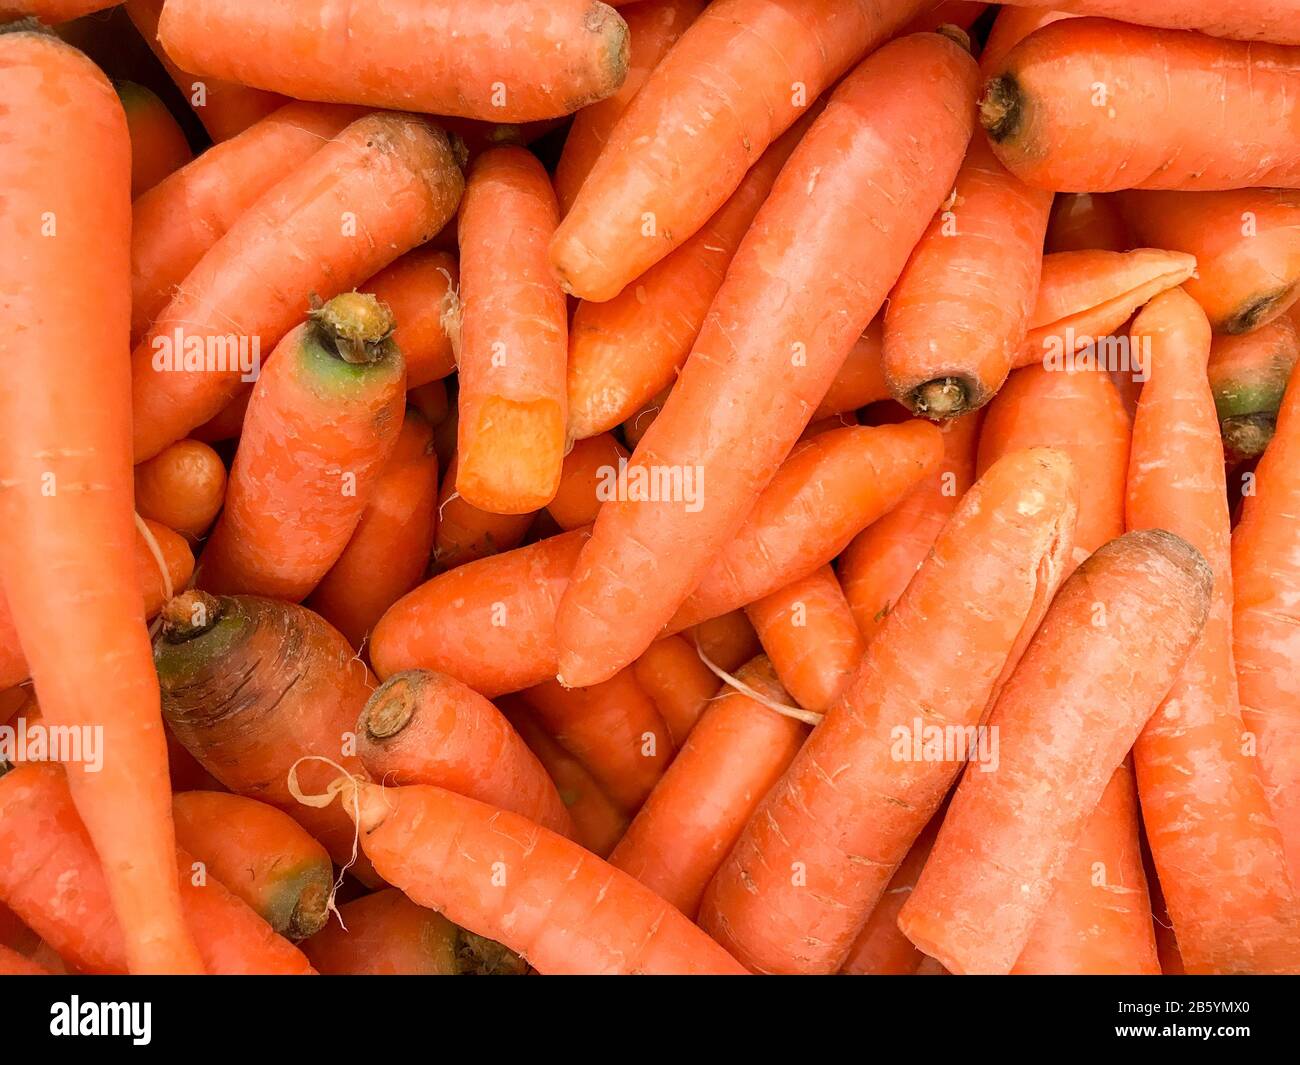 Imagen De Zanahorias Orgánicas En El Mercado. Fondo de alimentos frescos y saludables. Foto de stock